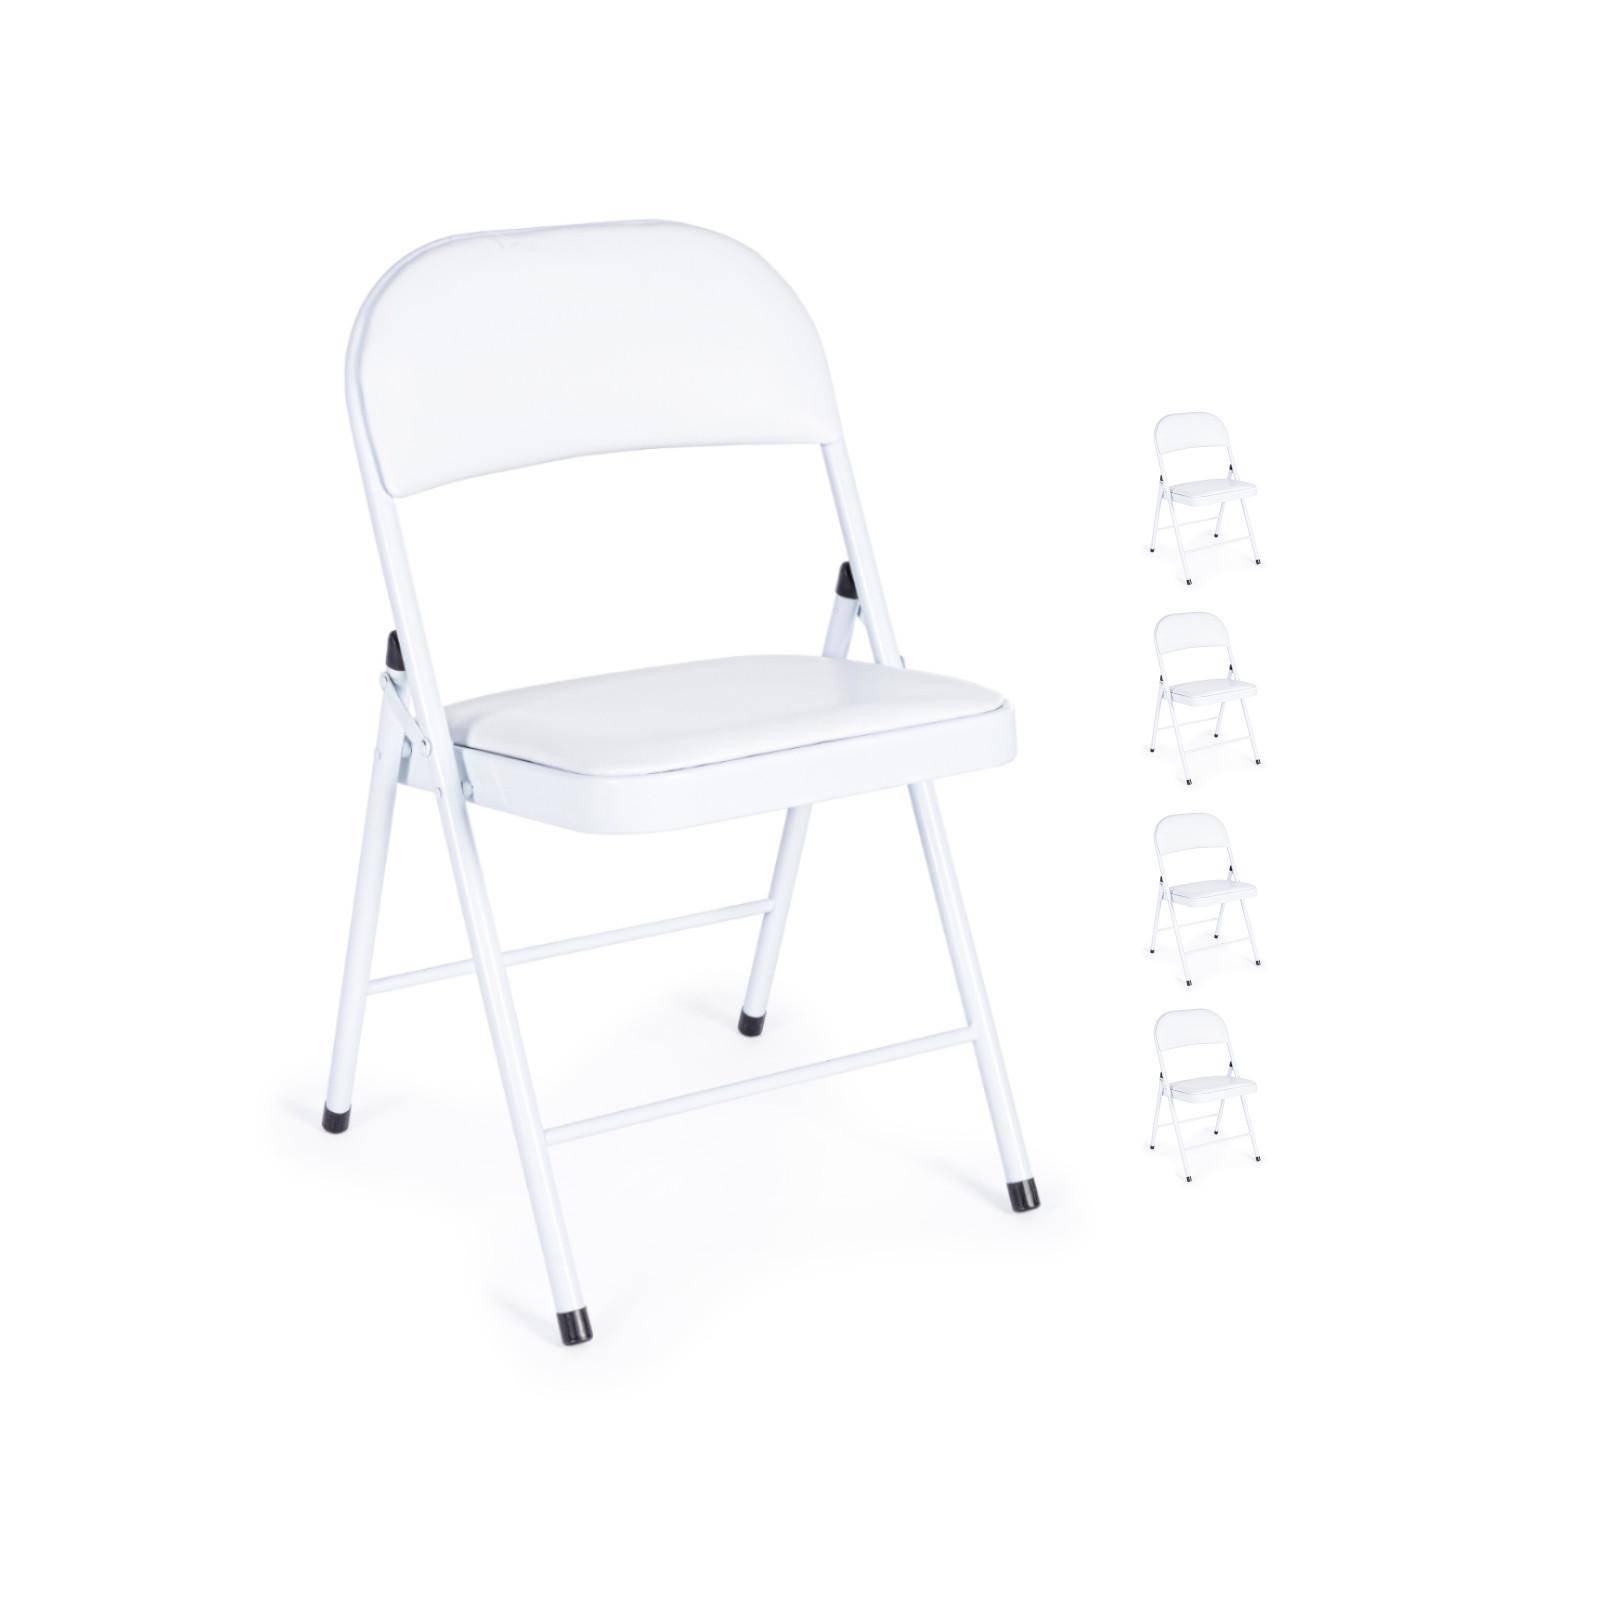 Ipastock - Righe di sedie pieghevoli bianche sul prato